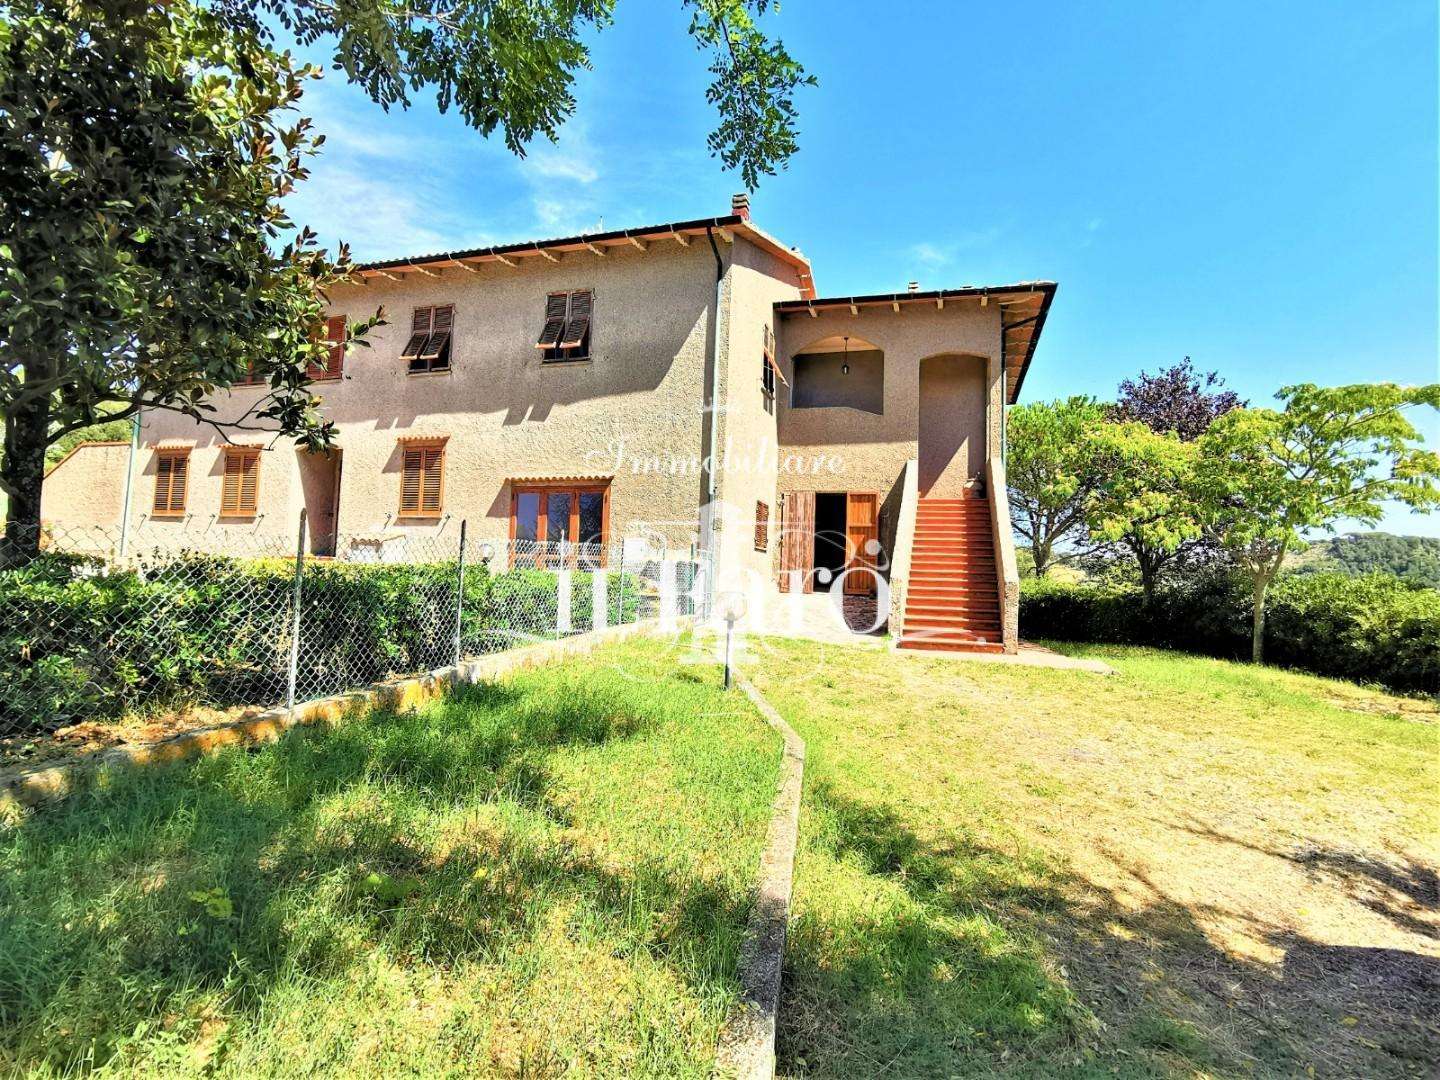 Casa Bi - Trifamiliare in Vendita a Pomarance Via Castello in Serrazzano,